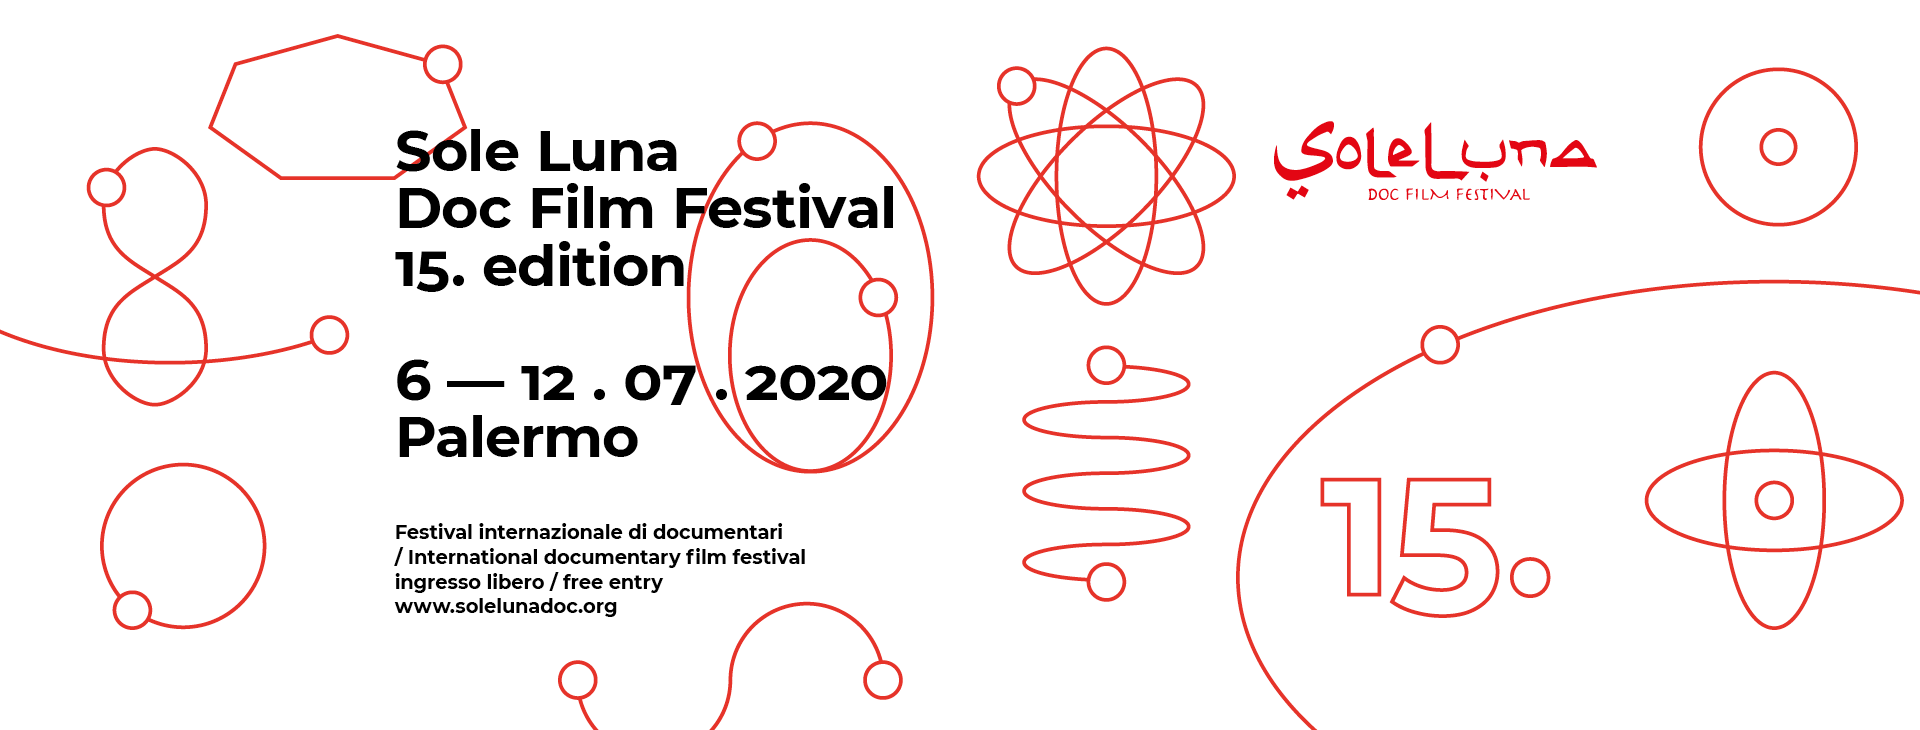 Sole Luna Doc Fest 2020 